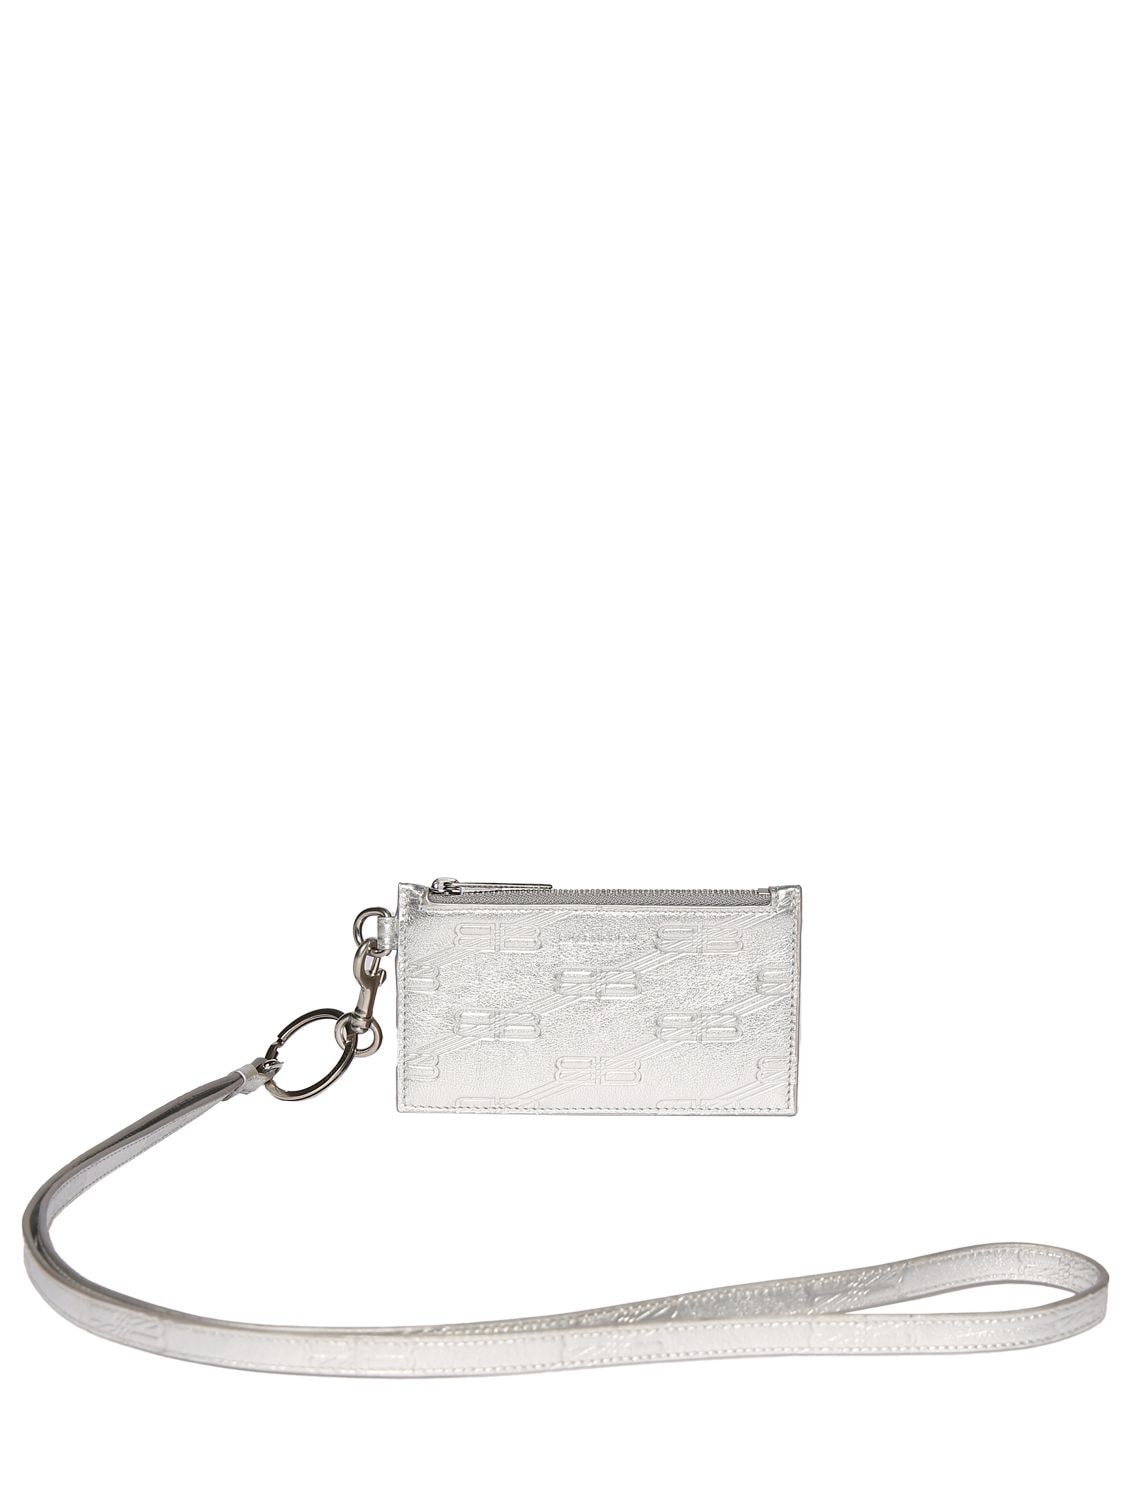 Balenciaga Leather Card Holder W/ Keyring In Silver